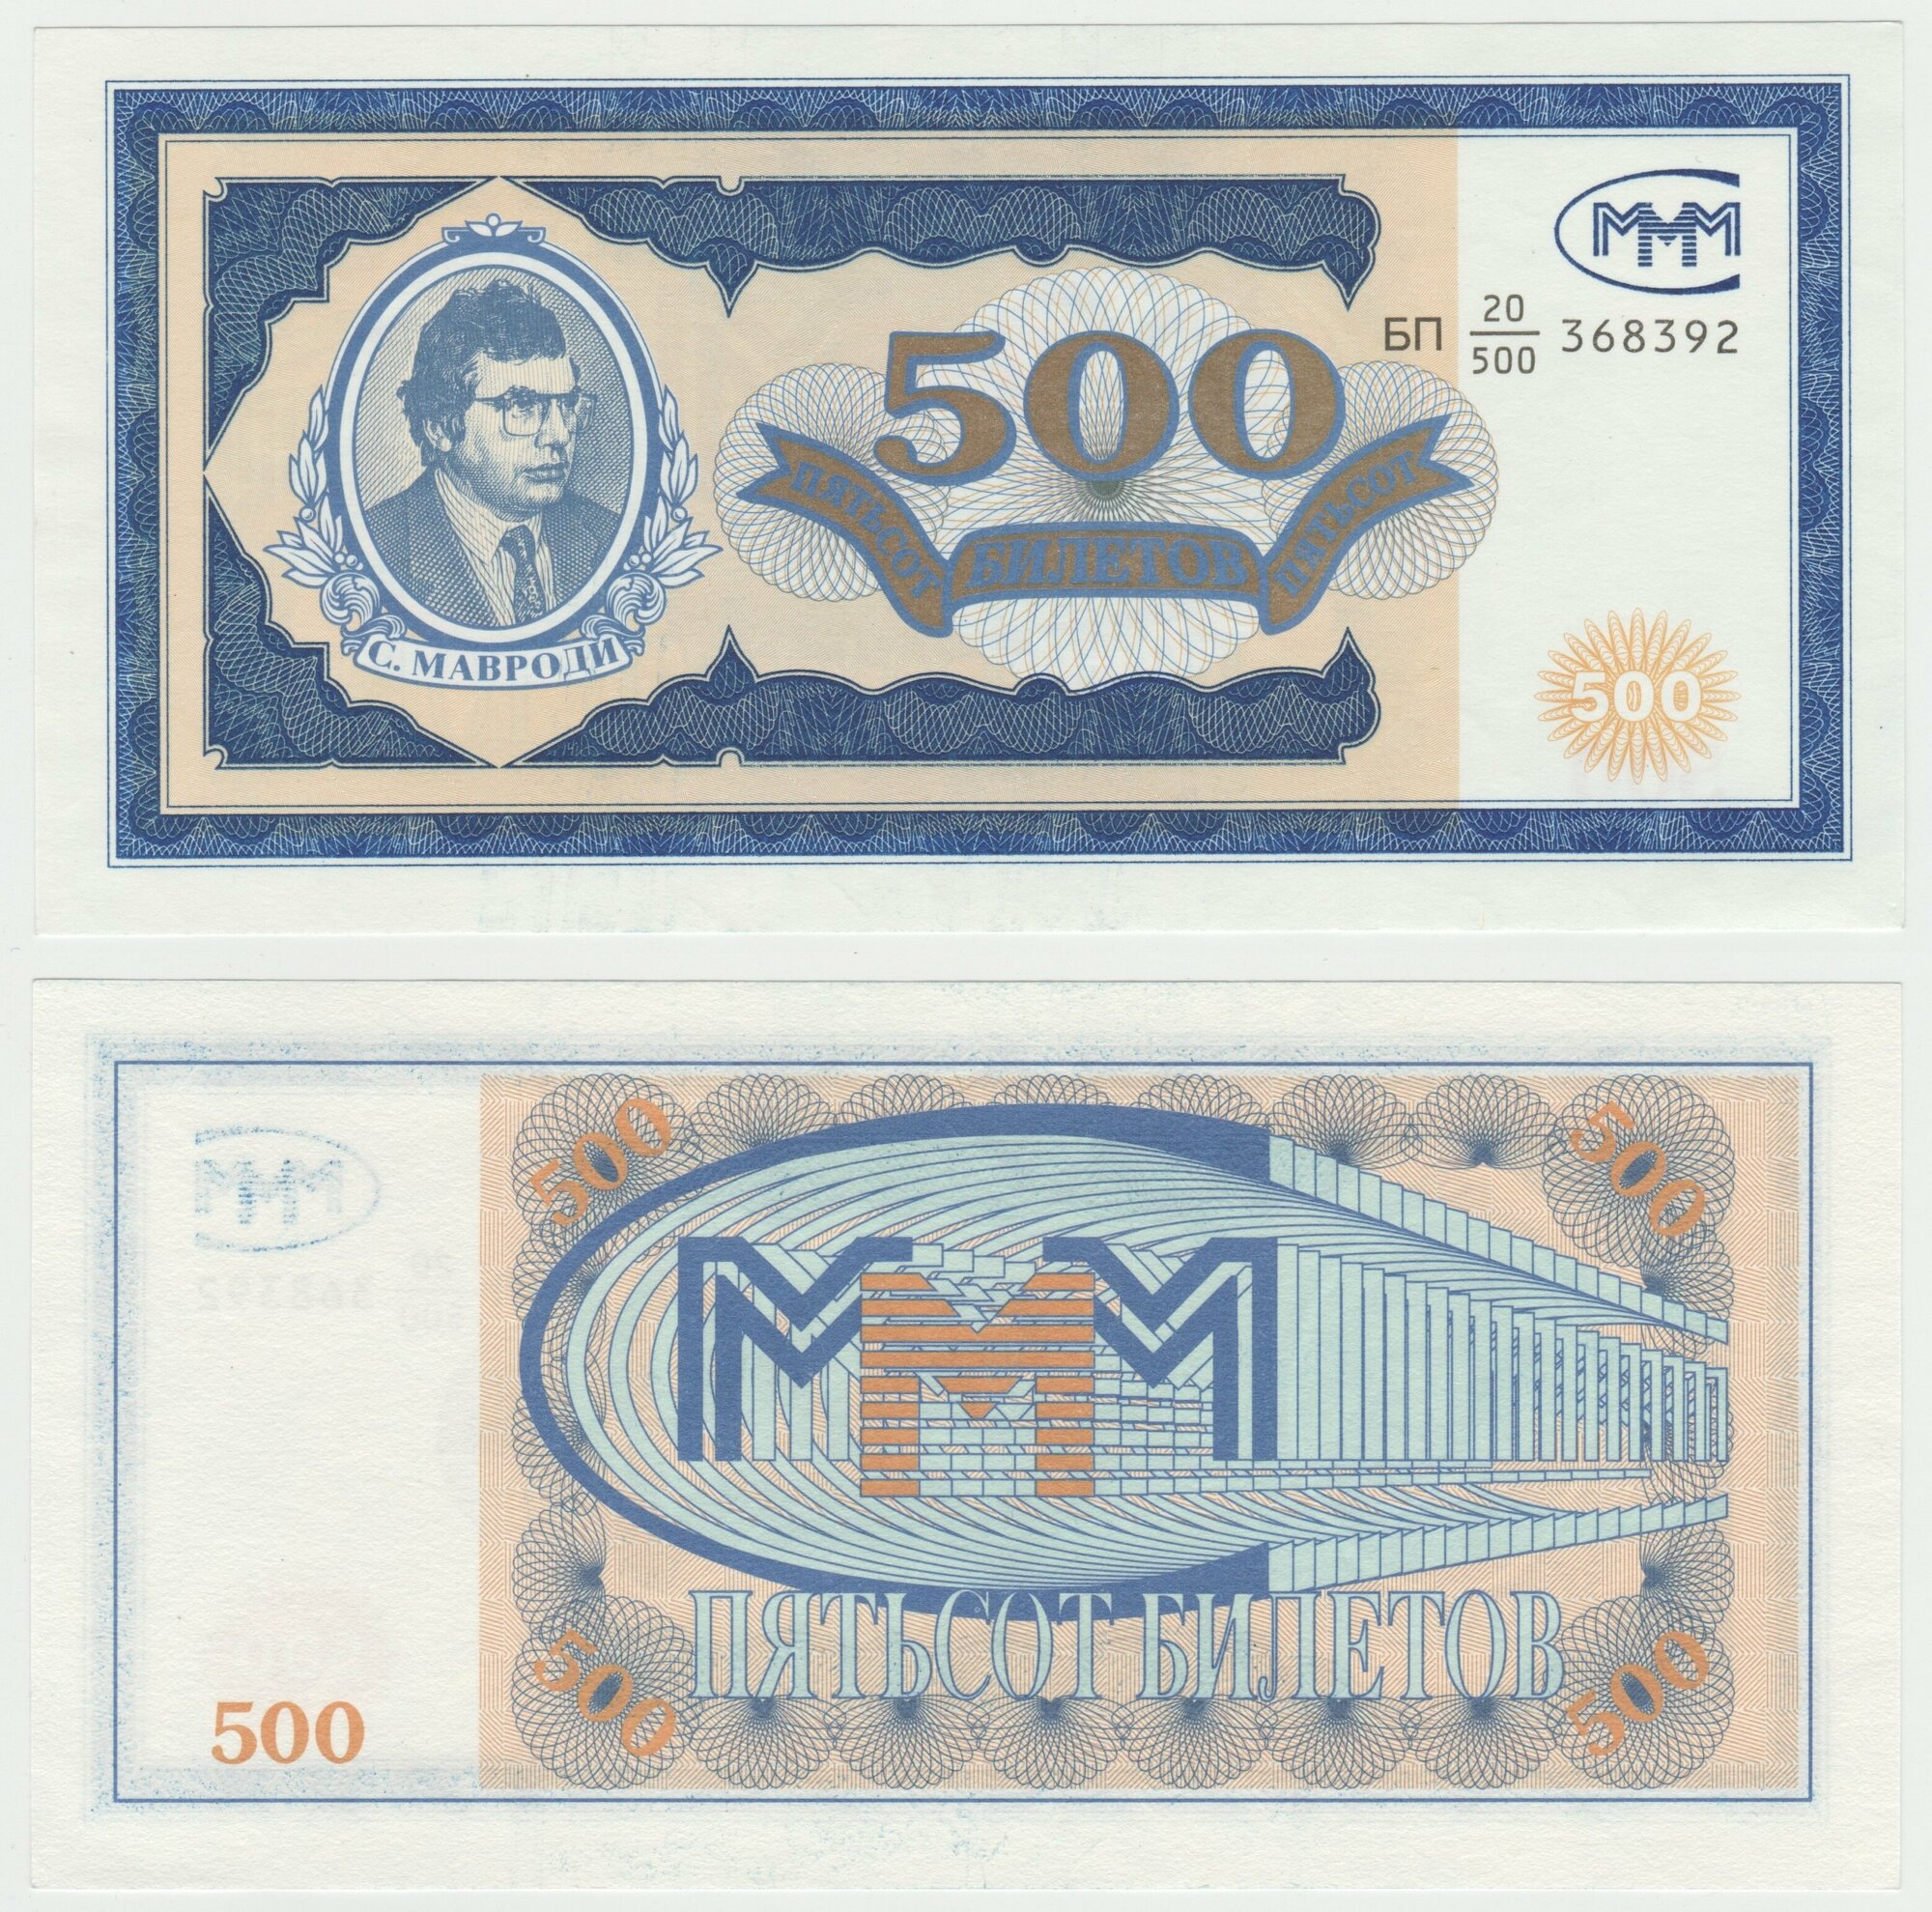 Банкнота России 500 билетов МММ серия БП выпуск 1. UNC ПРЕСС